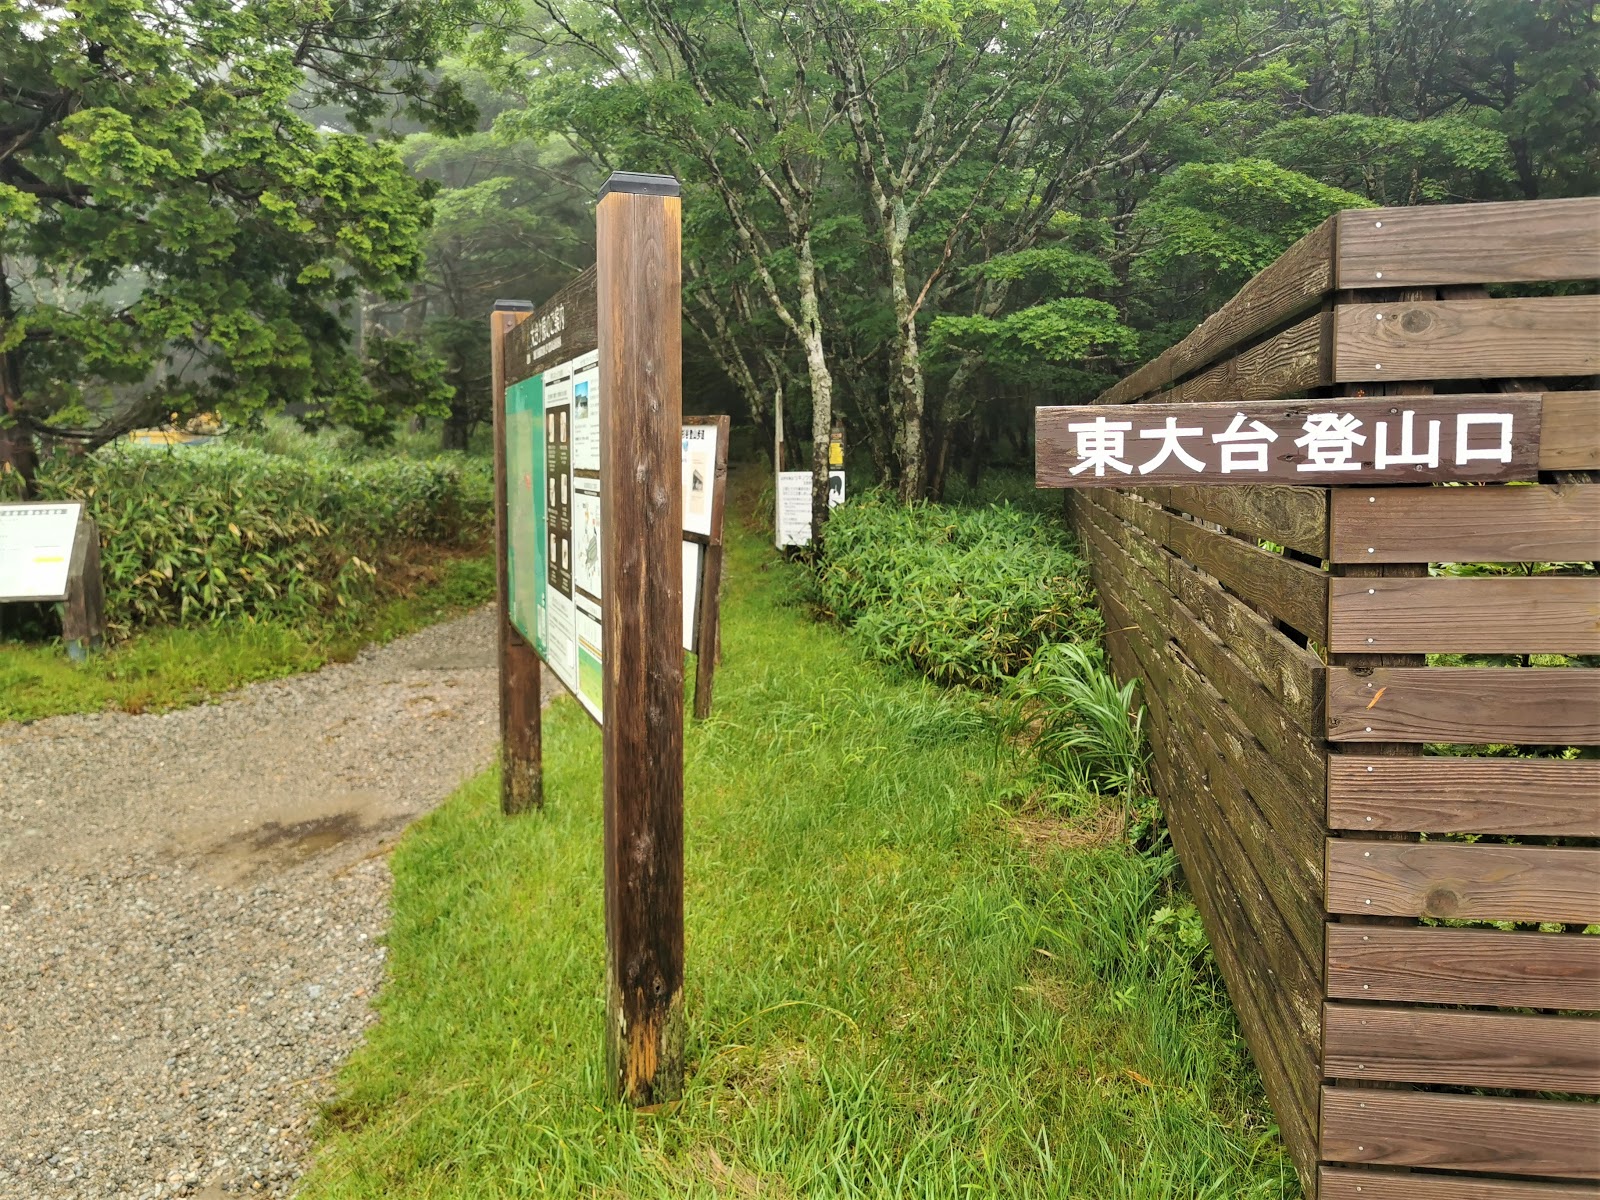 大蛇嵓が見どころ 降雨量日本一の大台ケ原にアラセブメタボ父と登るin梅雨 ちょっと寄り道の山